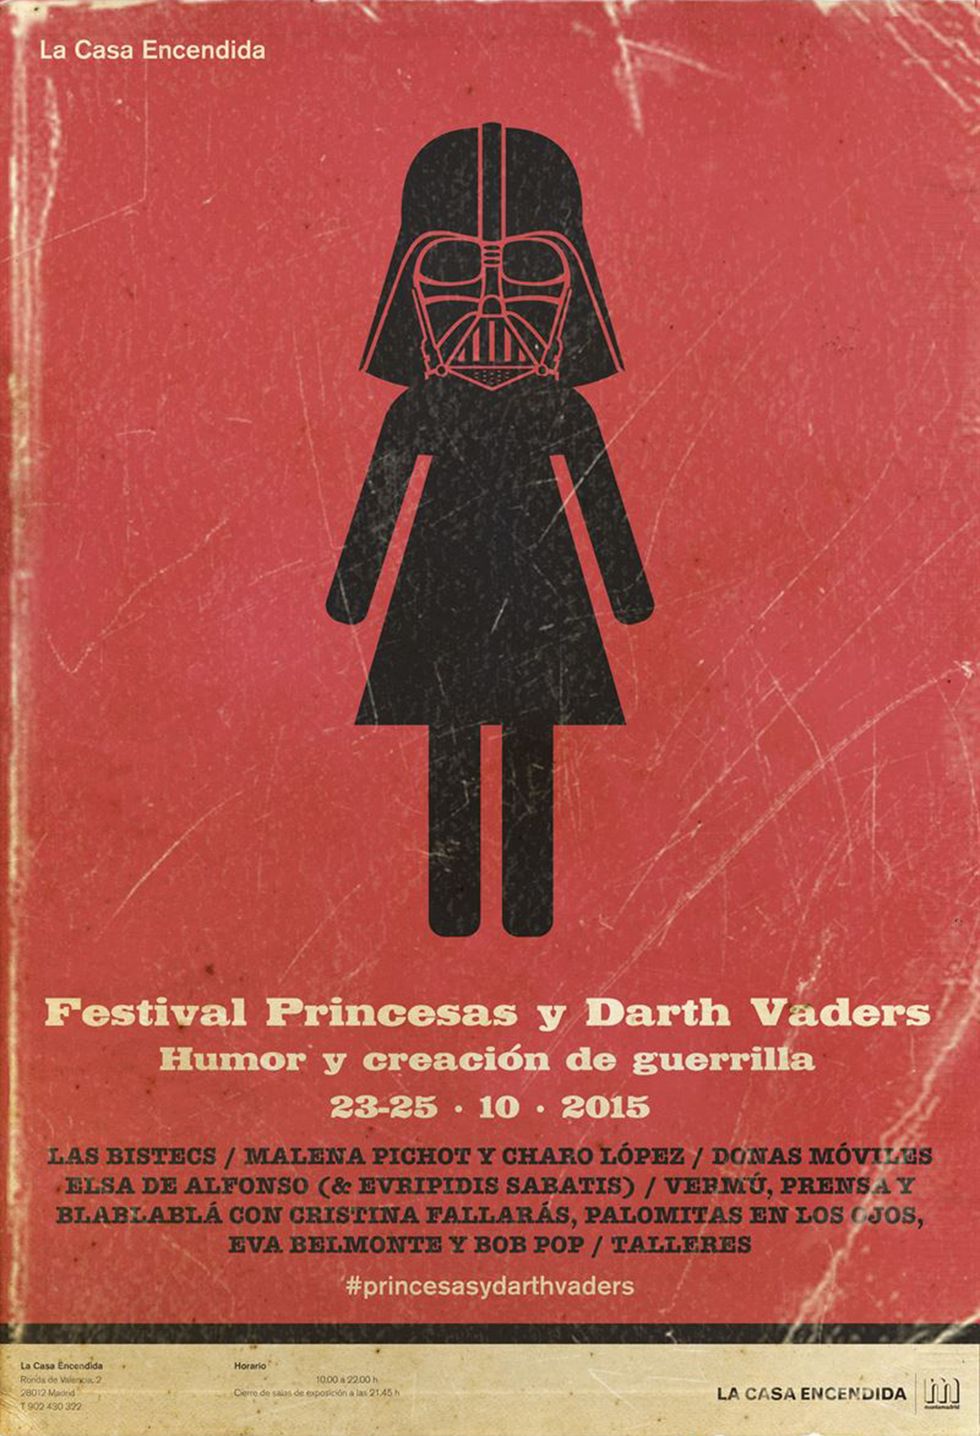 <p>“Cada niño y cada niña debería poder ser una princesa y un Darth Vader a la vez”. De esta frase extraída de internet surge el concepto que marca el primer <a href="http://www.lacasaencendida.es/es/grupo-eventos/princesas-y-darth-vaders-2015-4830" target="_blank"><strong>Festival Princesas y Darth Vaders,</strong></a> definido como un certamen de humor y creación femenina 'de guerrilla'. Este fin de semana, al patio de la Casa Encendida se asomarán numerosas actividades con la mujer en el punto de mira, desde tertulias sobre la actualidad hasta talleres de telecomunicaciones o videoclips.</p>